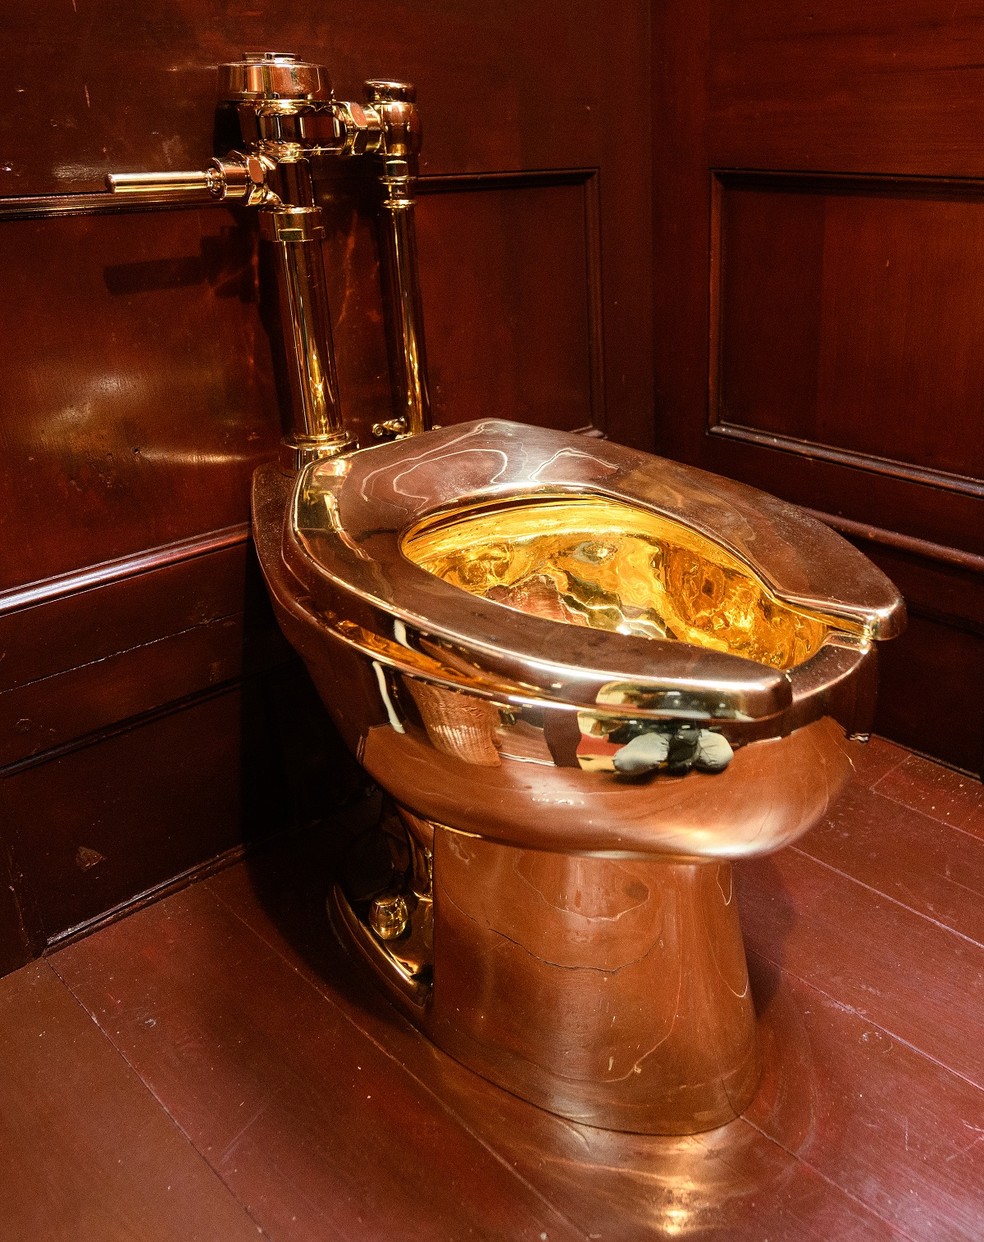 Furto de vaso sanitário de ouro, avaliado em R$ 30 milhões, é solucionado após quatro anos — Foto: Getty Images